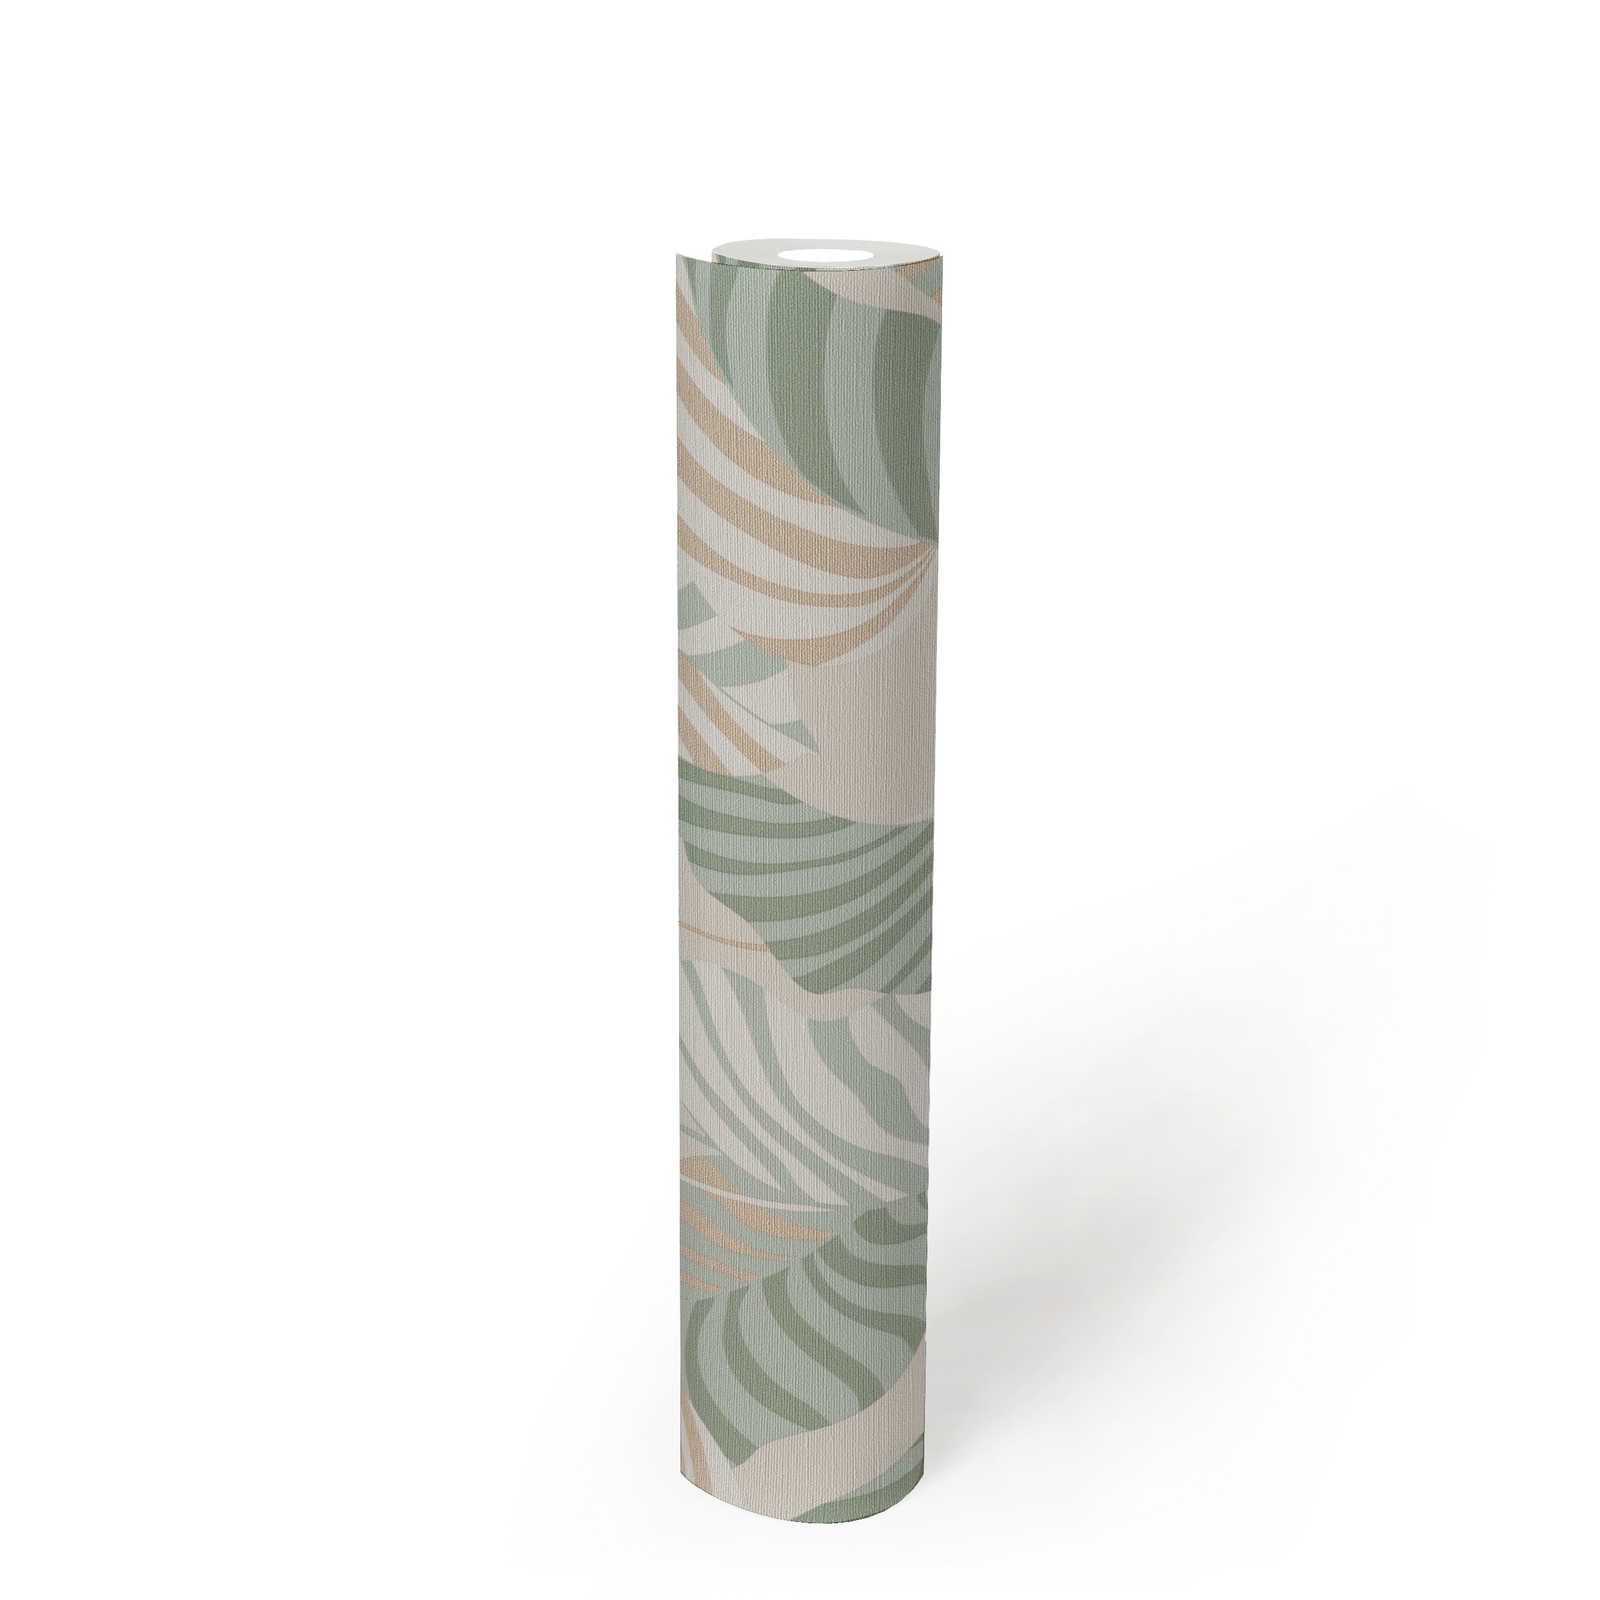             Vliestapete in natürlichen Stil mit leicht glänzenden Palmblättern – Creme, Grün, Gold
        